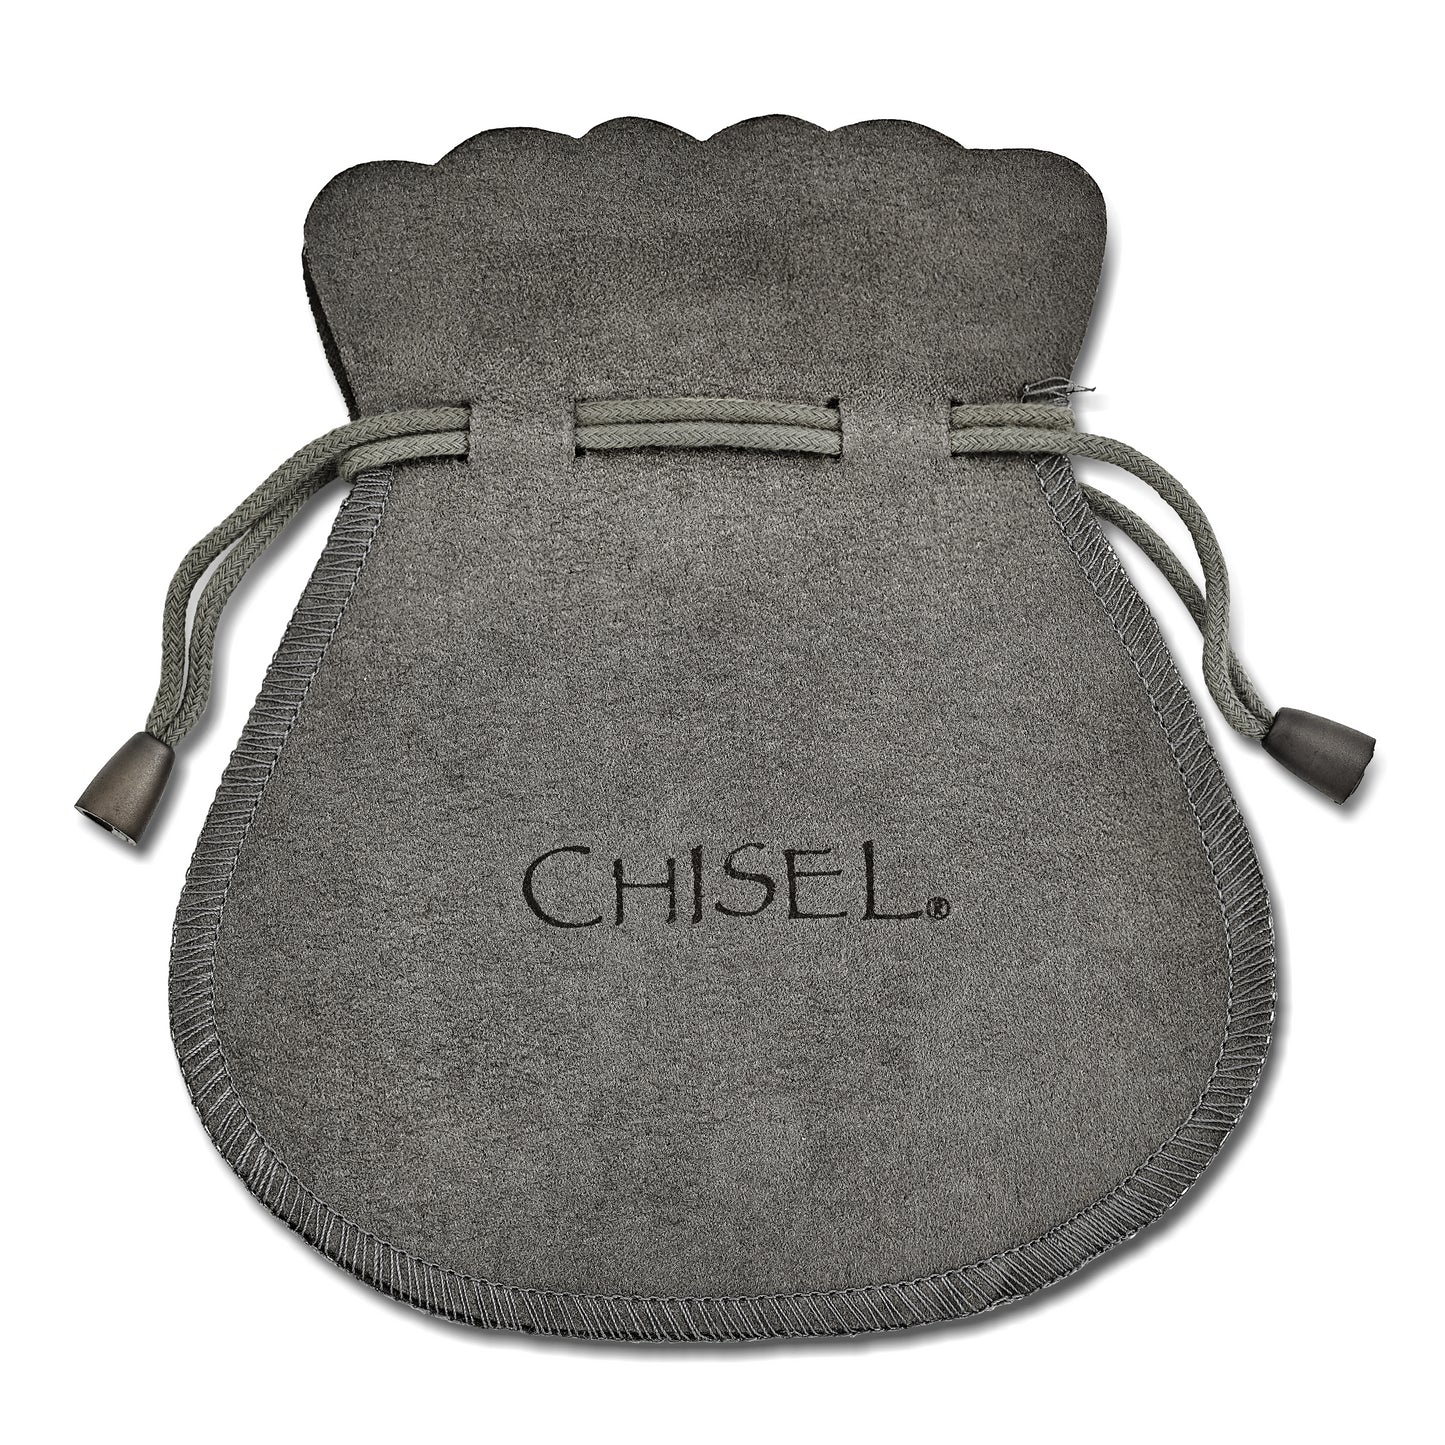 Chisel Stainless Steel Polished Heart Shepherd Hook Dangle Earrings